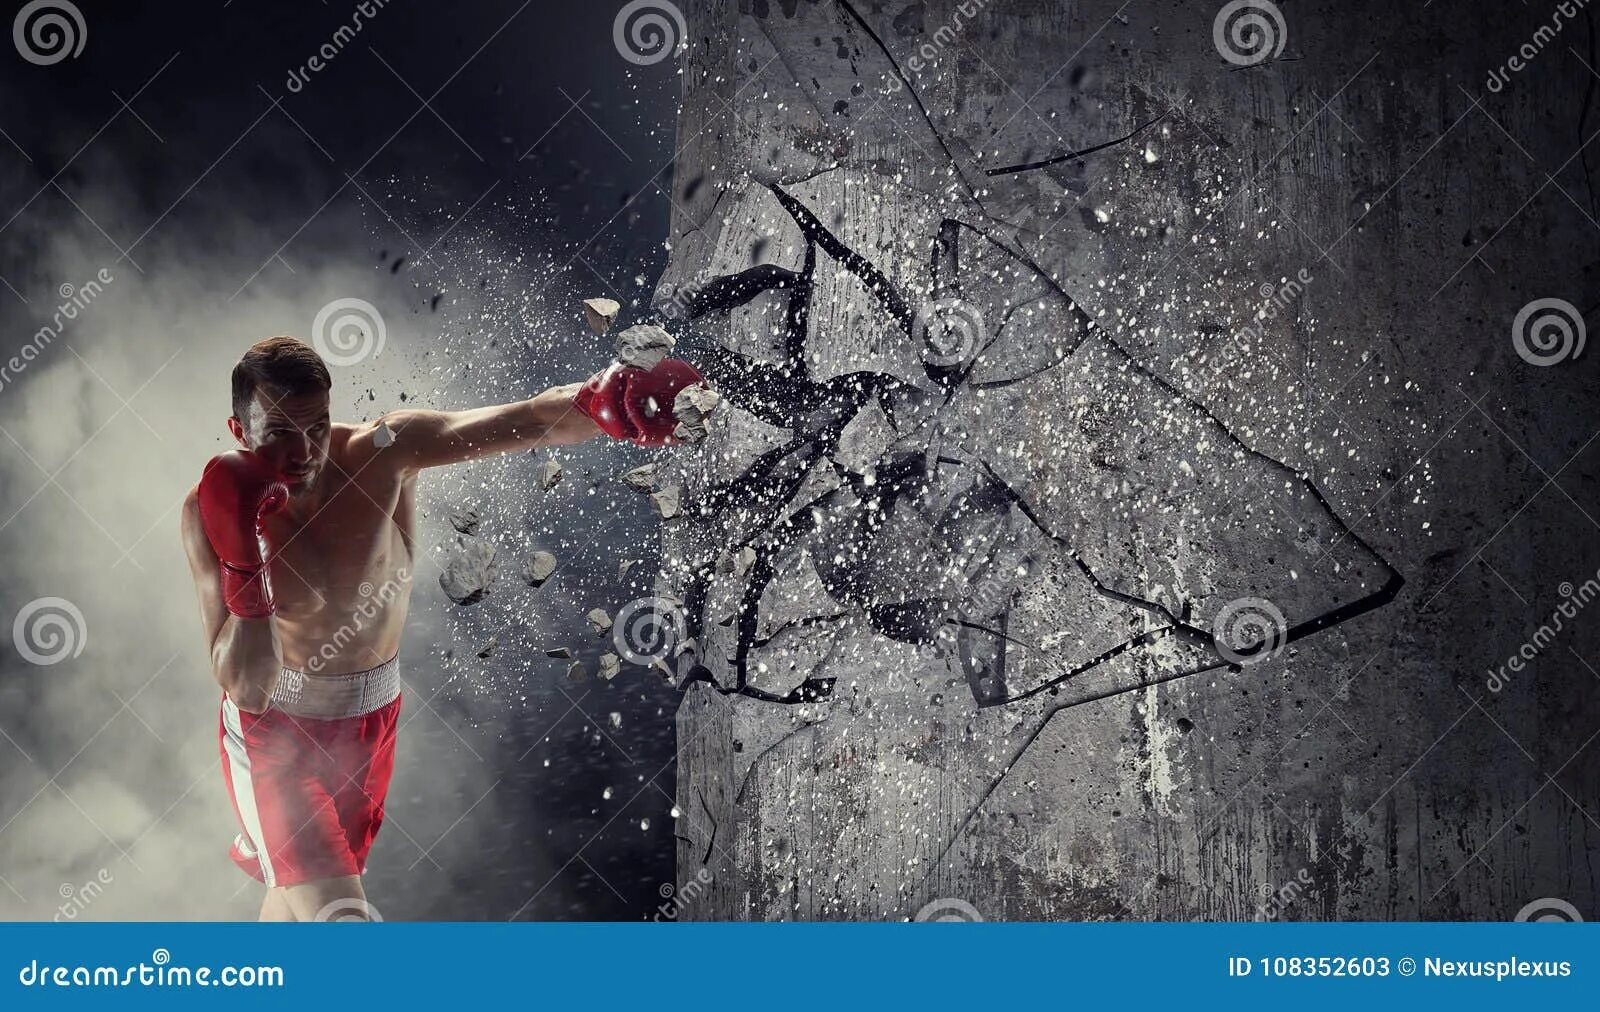 Бросить вызов following the spark. Разбивает стену спортсмен. Энергия ломает стену. Боксер разбивает стекло. Боксер разбивает стену.